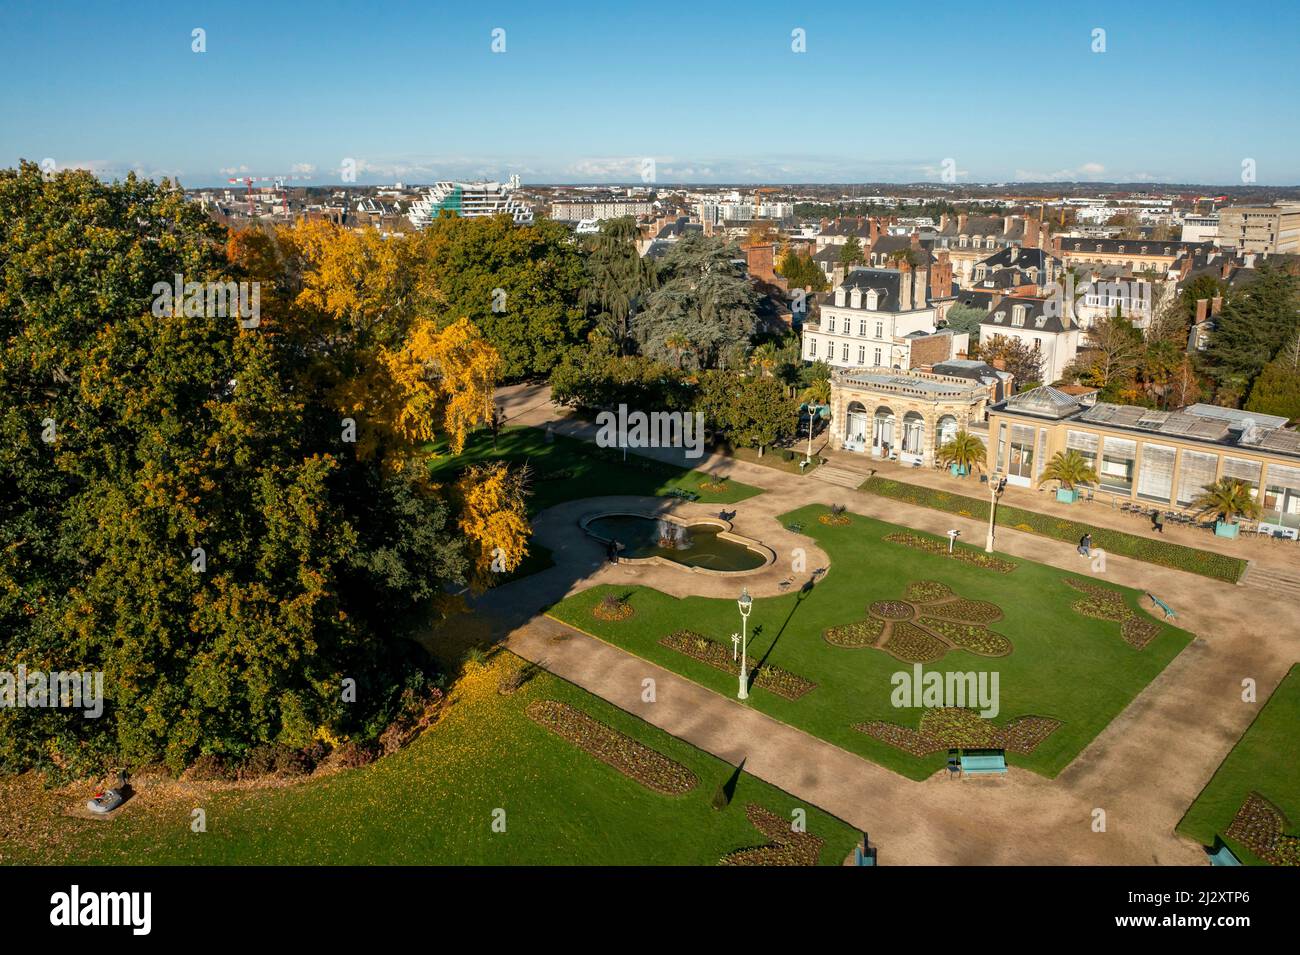 Rennes (Bretagne, Nordwestfrankreich): Luftaufnahme des Thabor Parks mit der Orangerie und Bäumen in Herbstfarben Stockfoto